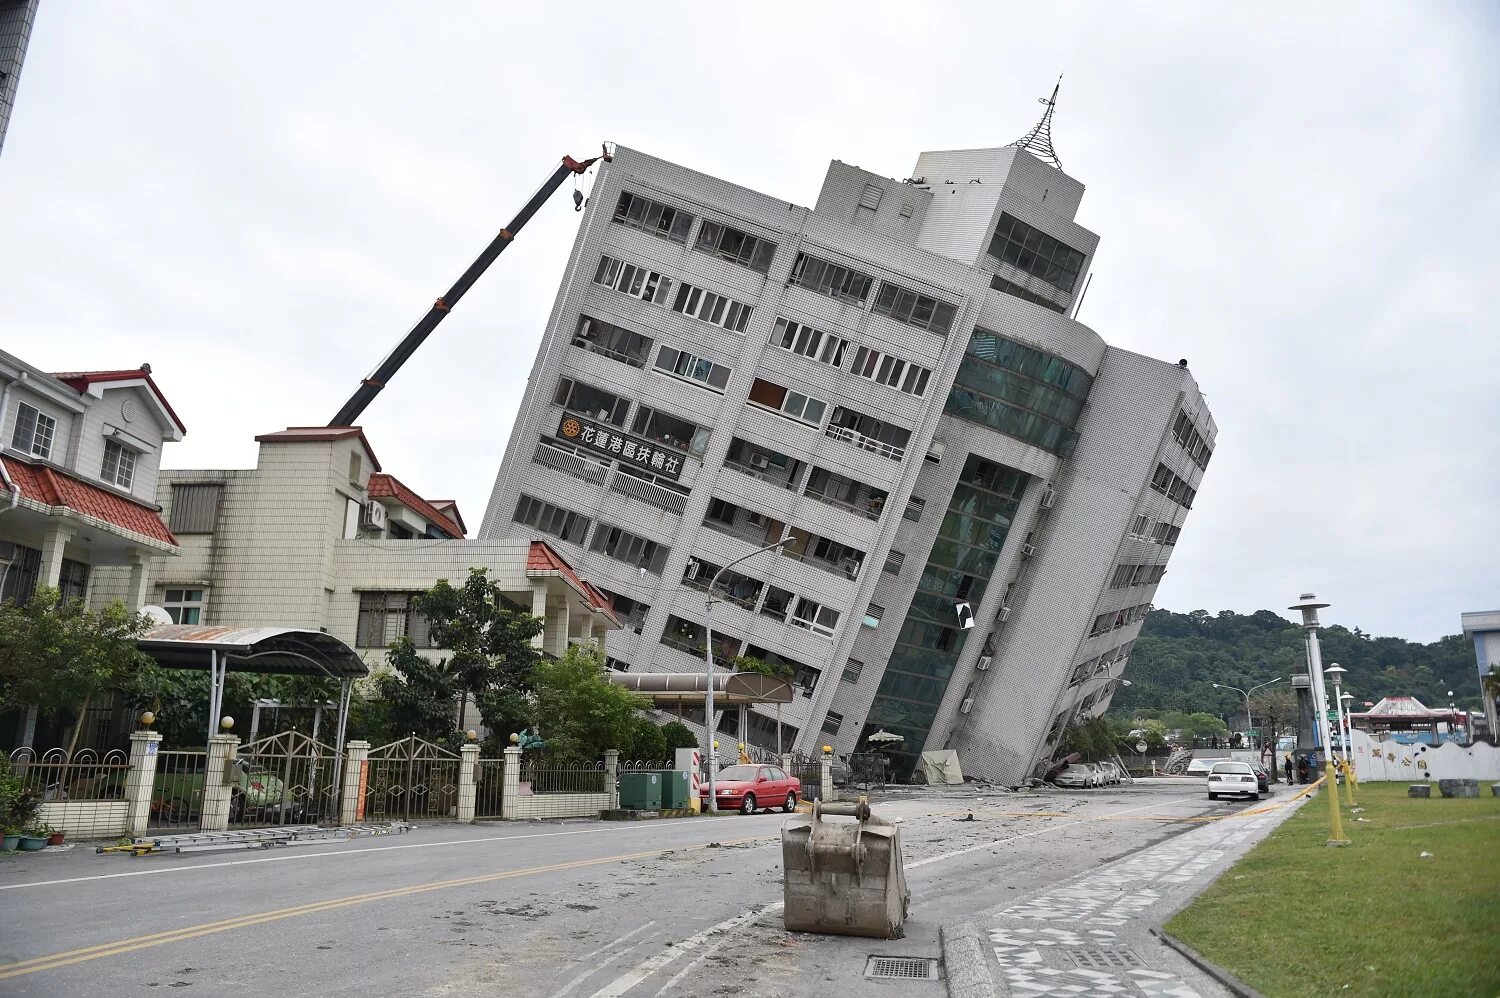 Тайвань землетрясение сегодня новости. Гостиница Маршал Тайвань землетрясение. Землетрясение на Тайване 1999. Землетрясение Хуалянь. Гостиница Маршал Тайвань.